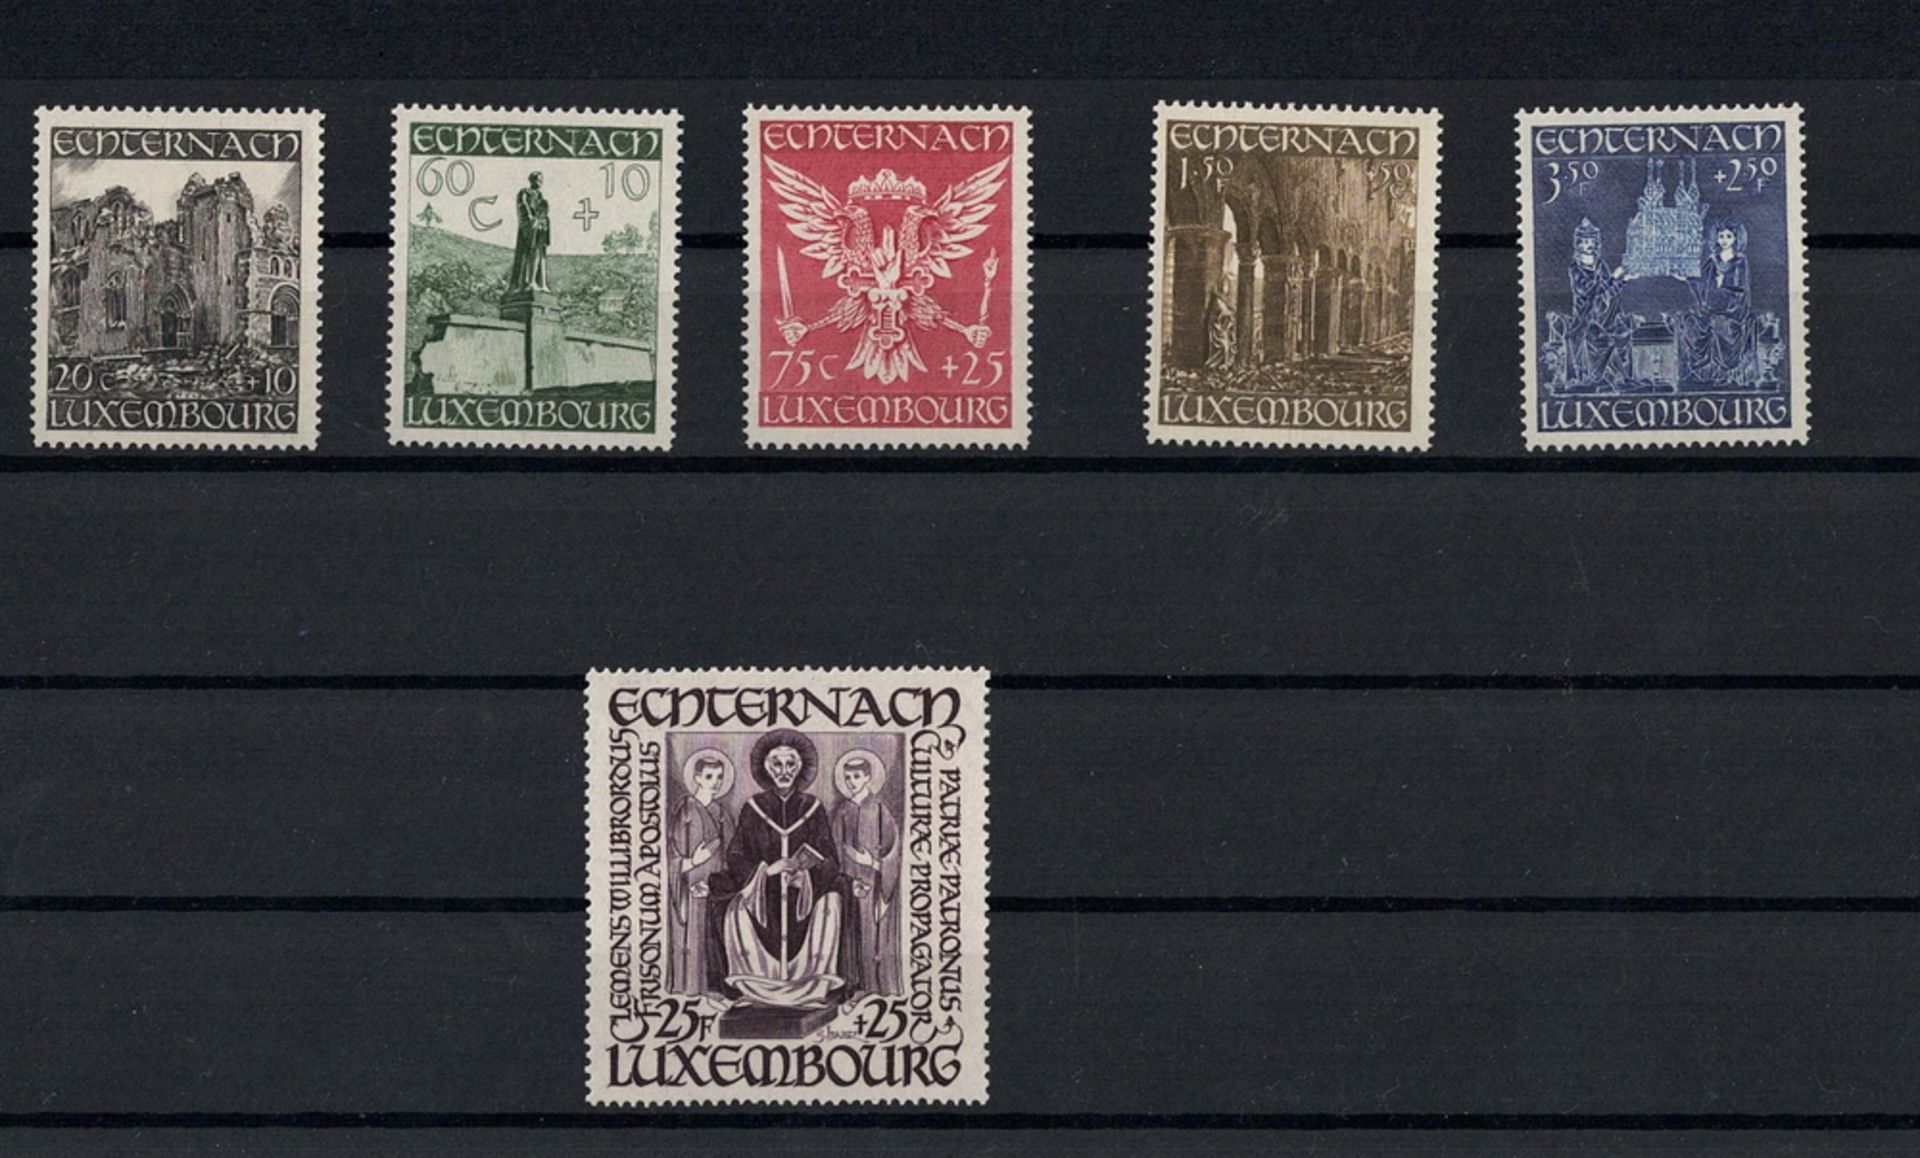 Luxemburg 1947. MiNr. 417-422, postfrisch